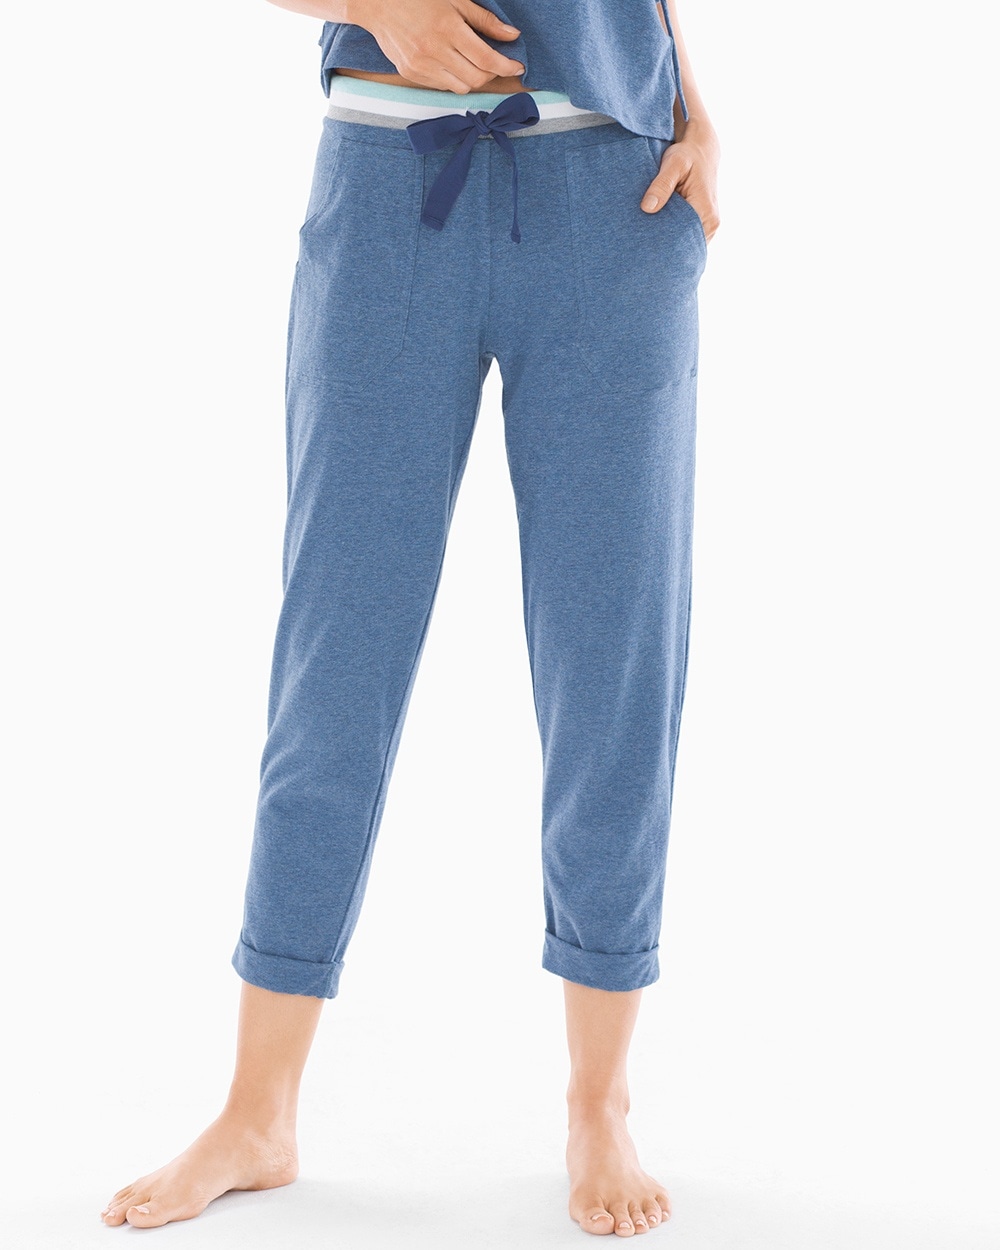 Splendid Blue Zone Crop Pajama Pants Ocean Blue Heather